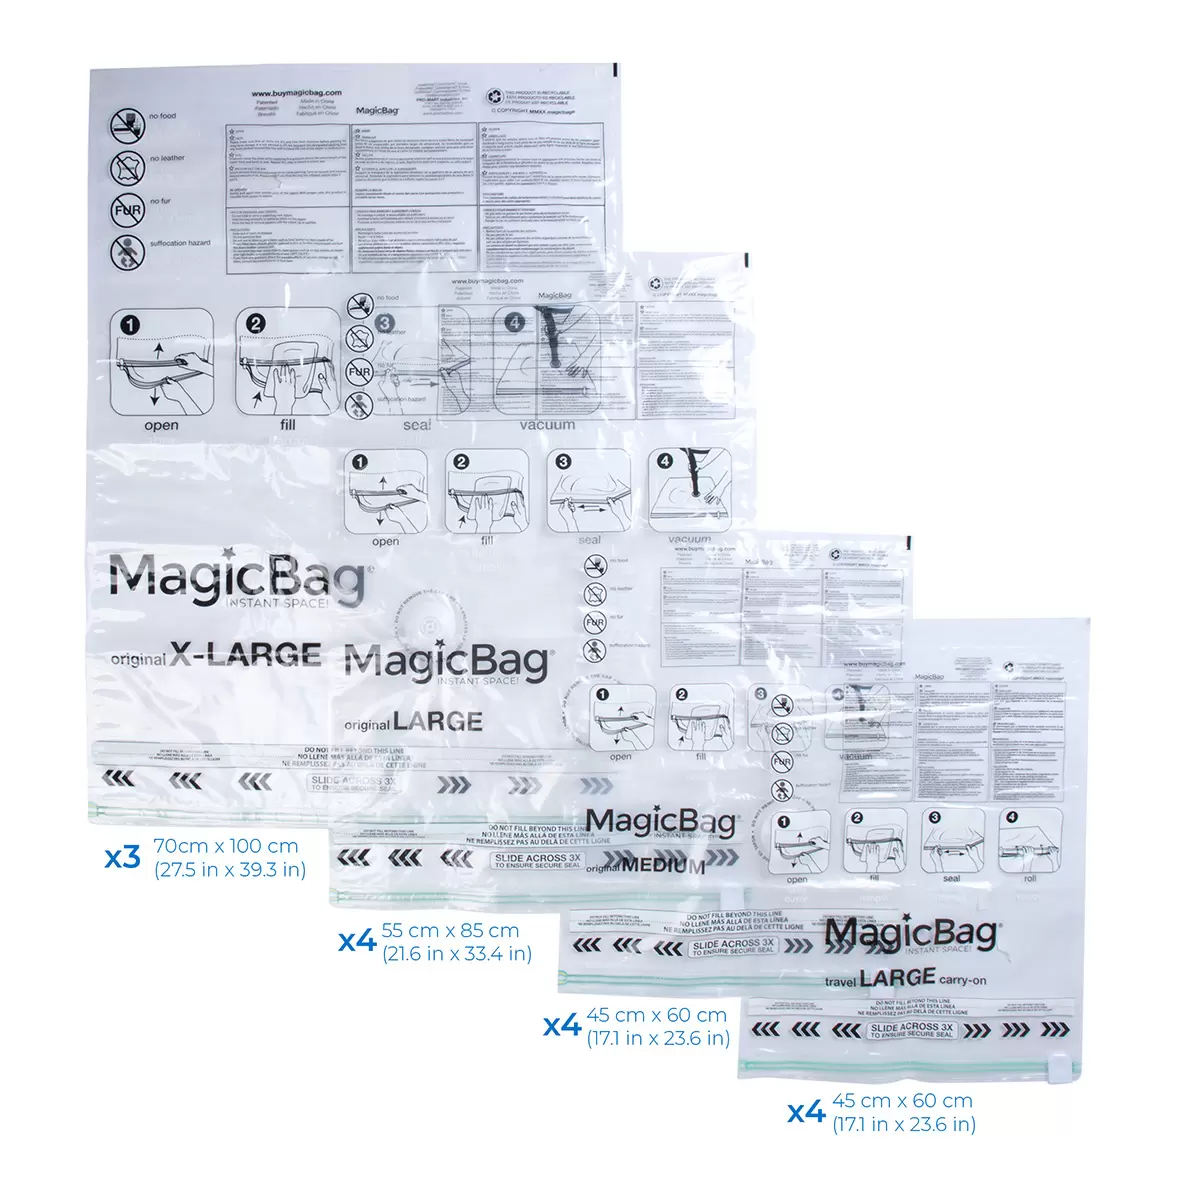 MagicBag 真空壓縮收納袋15入